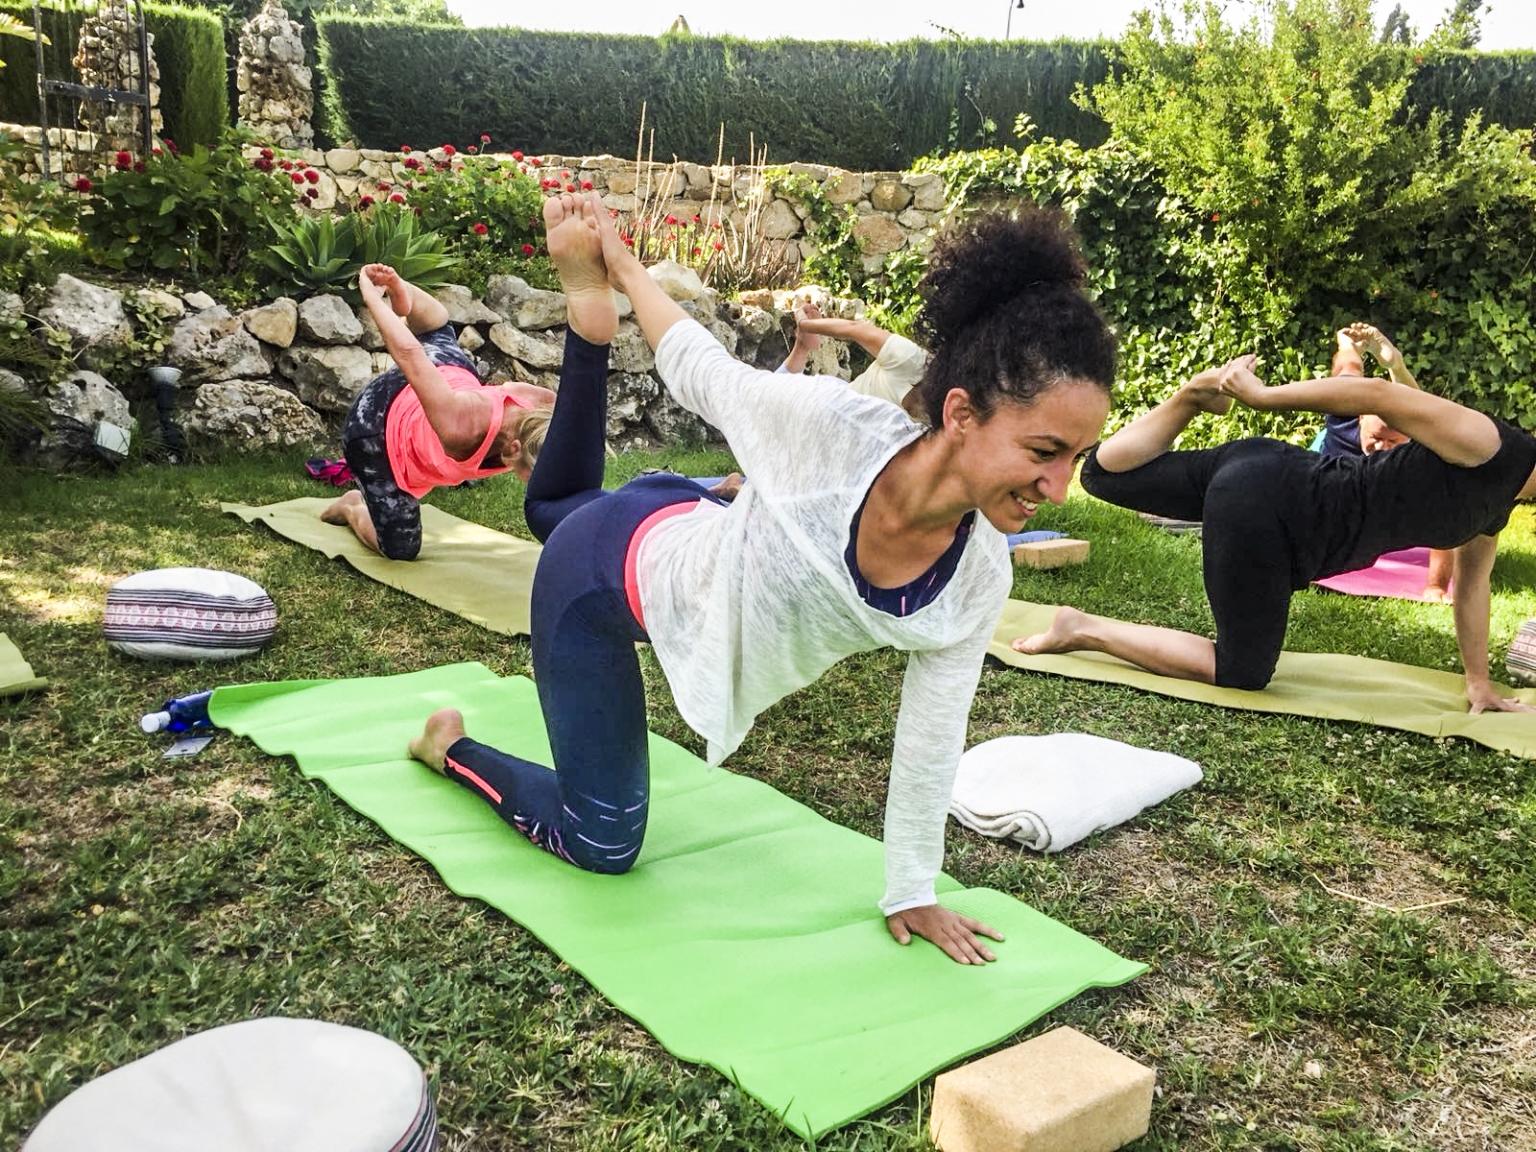 Clases de Yoga y retiros de formación para profesores de Yoga en nuestras instalaciones de Cortijo Las Monjas